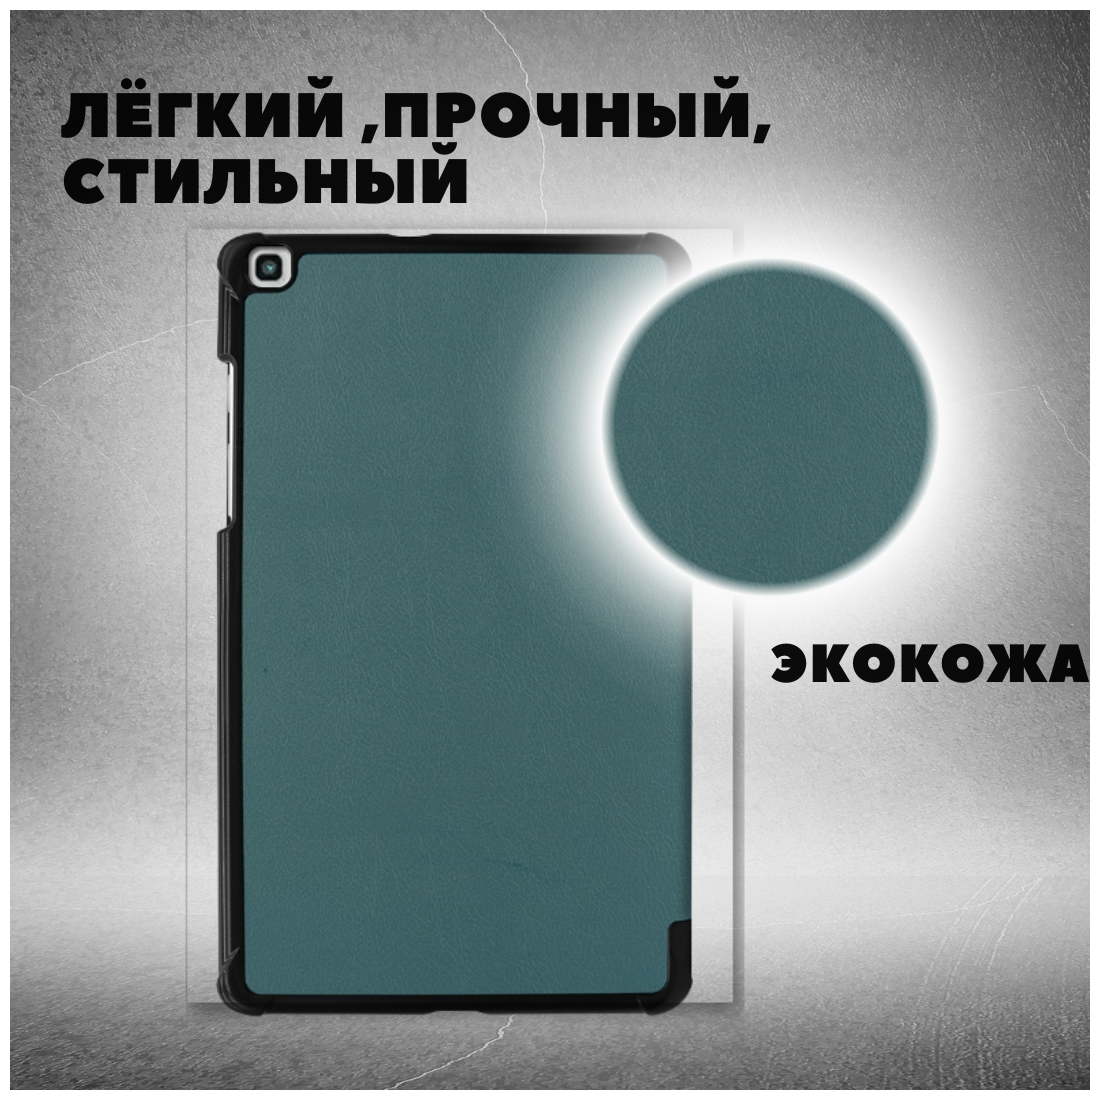 Чехол книжка /Планшетный чехол для Samsung Galaxy Tab A (101") (T510/T515) / Самсунг Галакси Таб А Плюс с магнитом /Зеленый